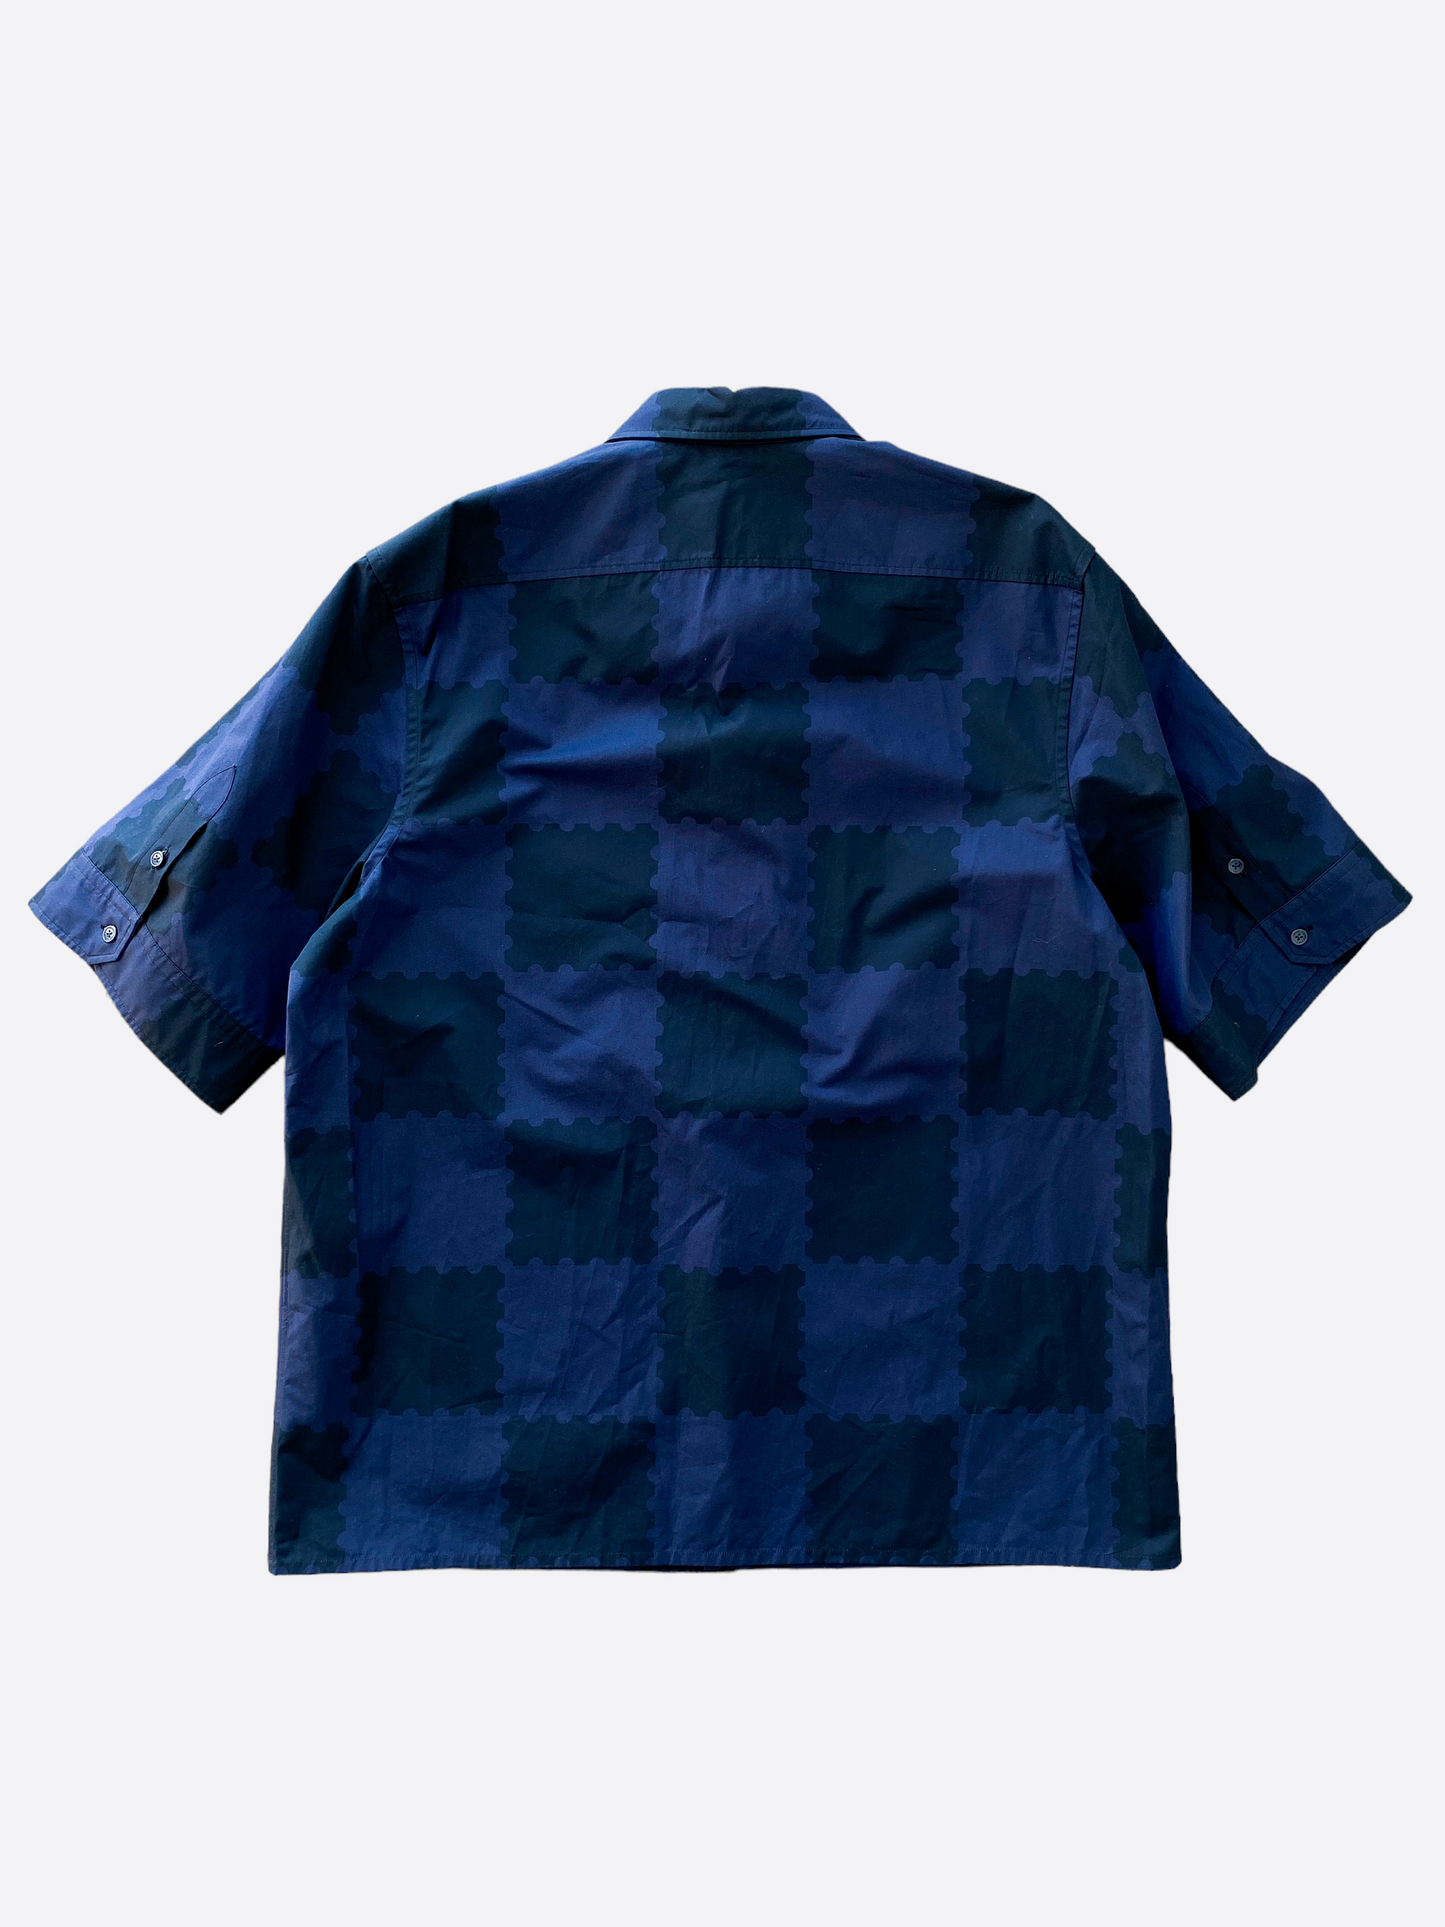 LV Nigo Flannel Shirt